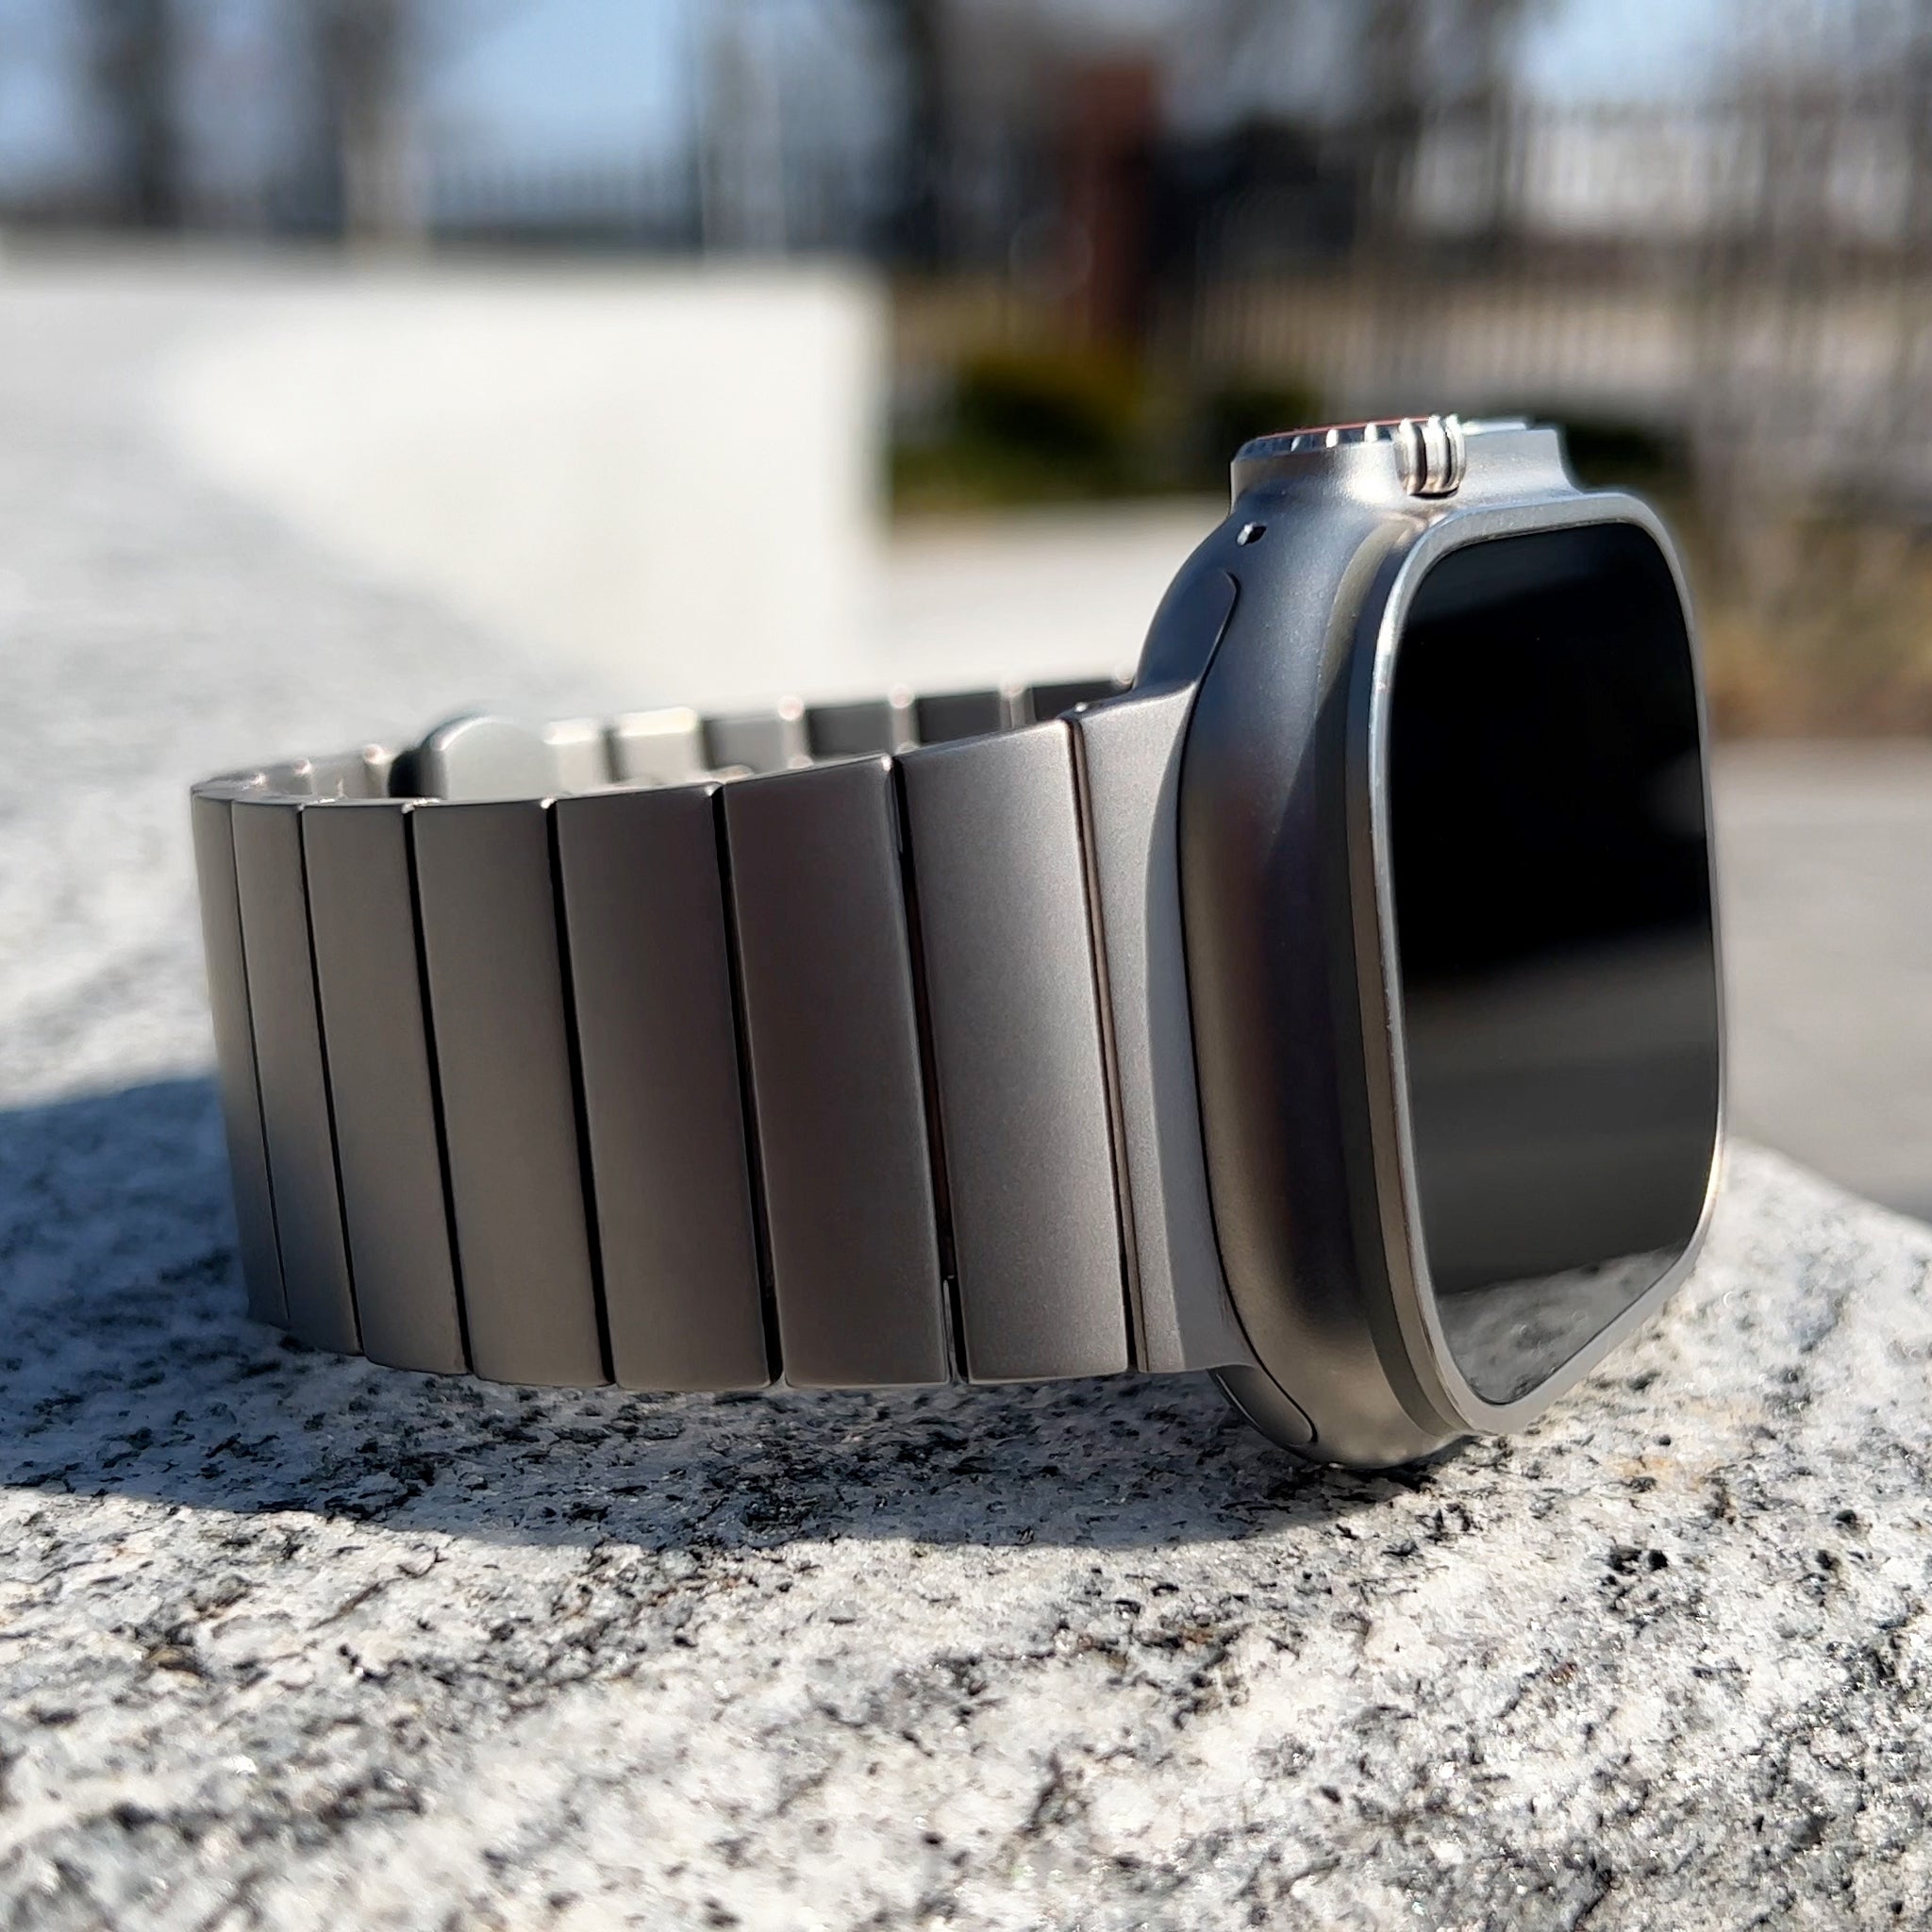 Apple Watch Ultra Titanium Bands